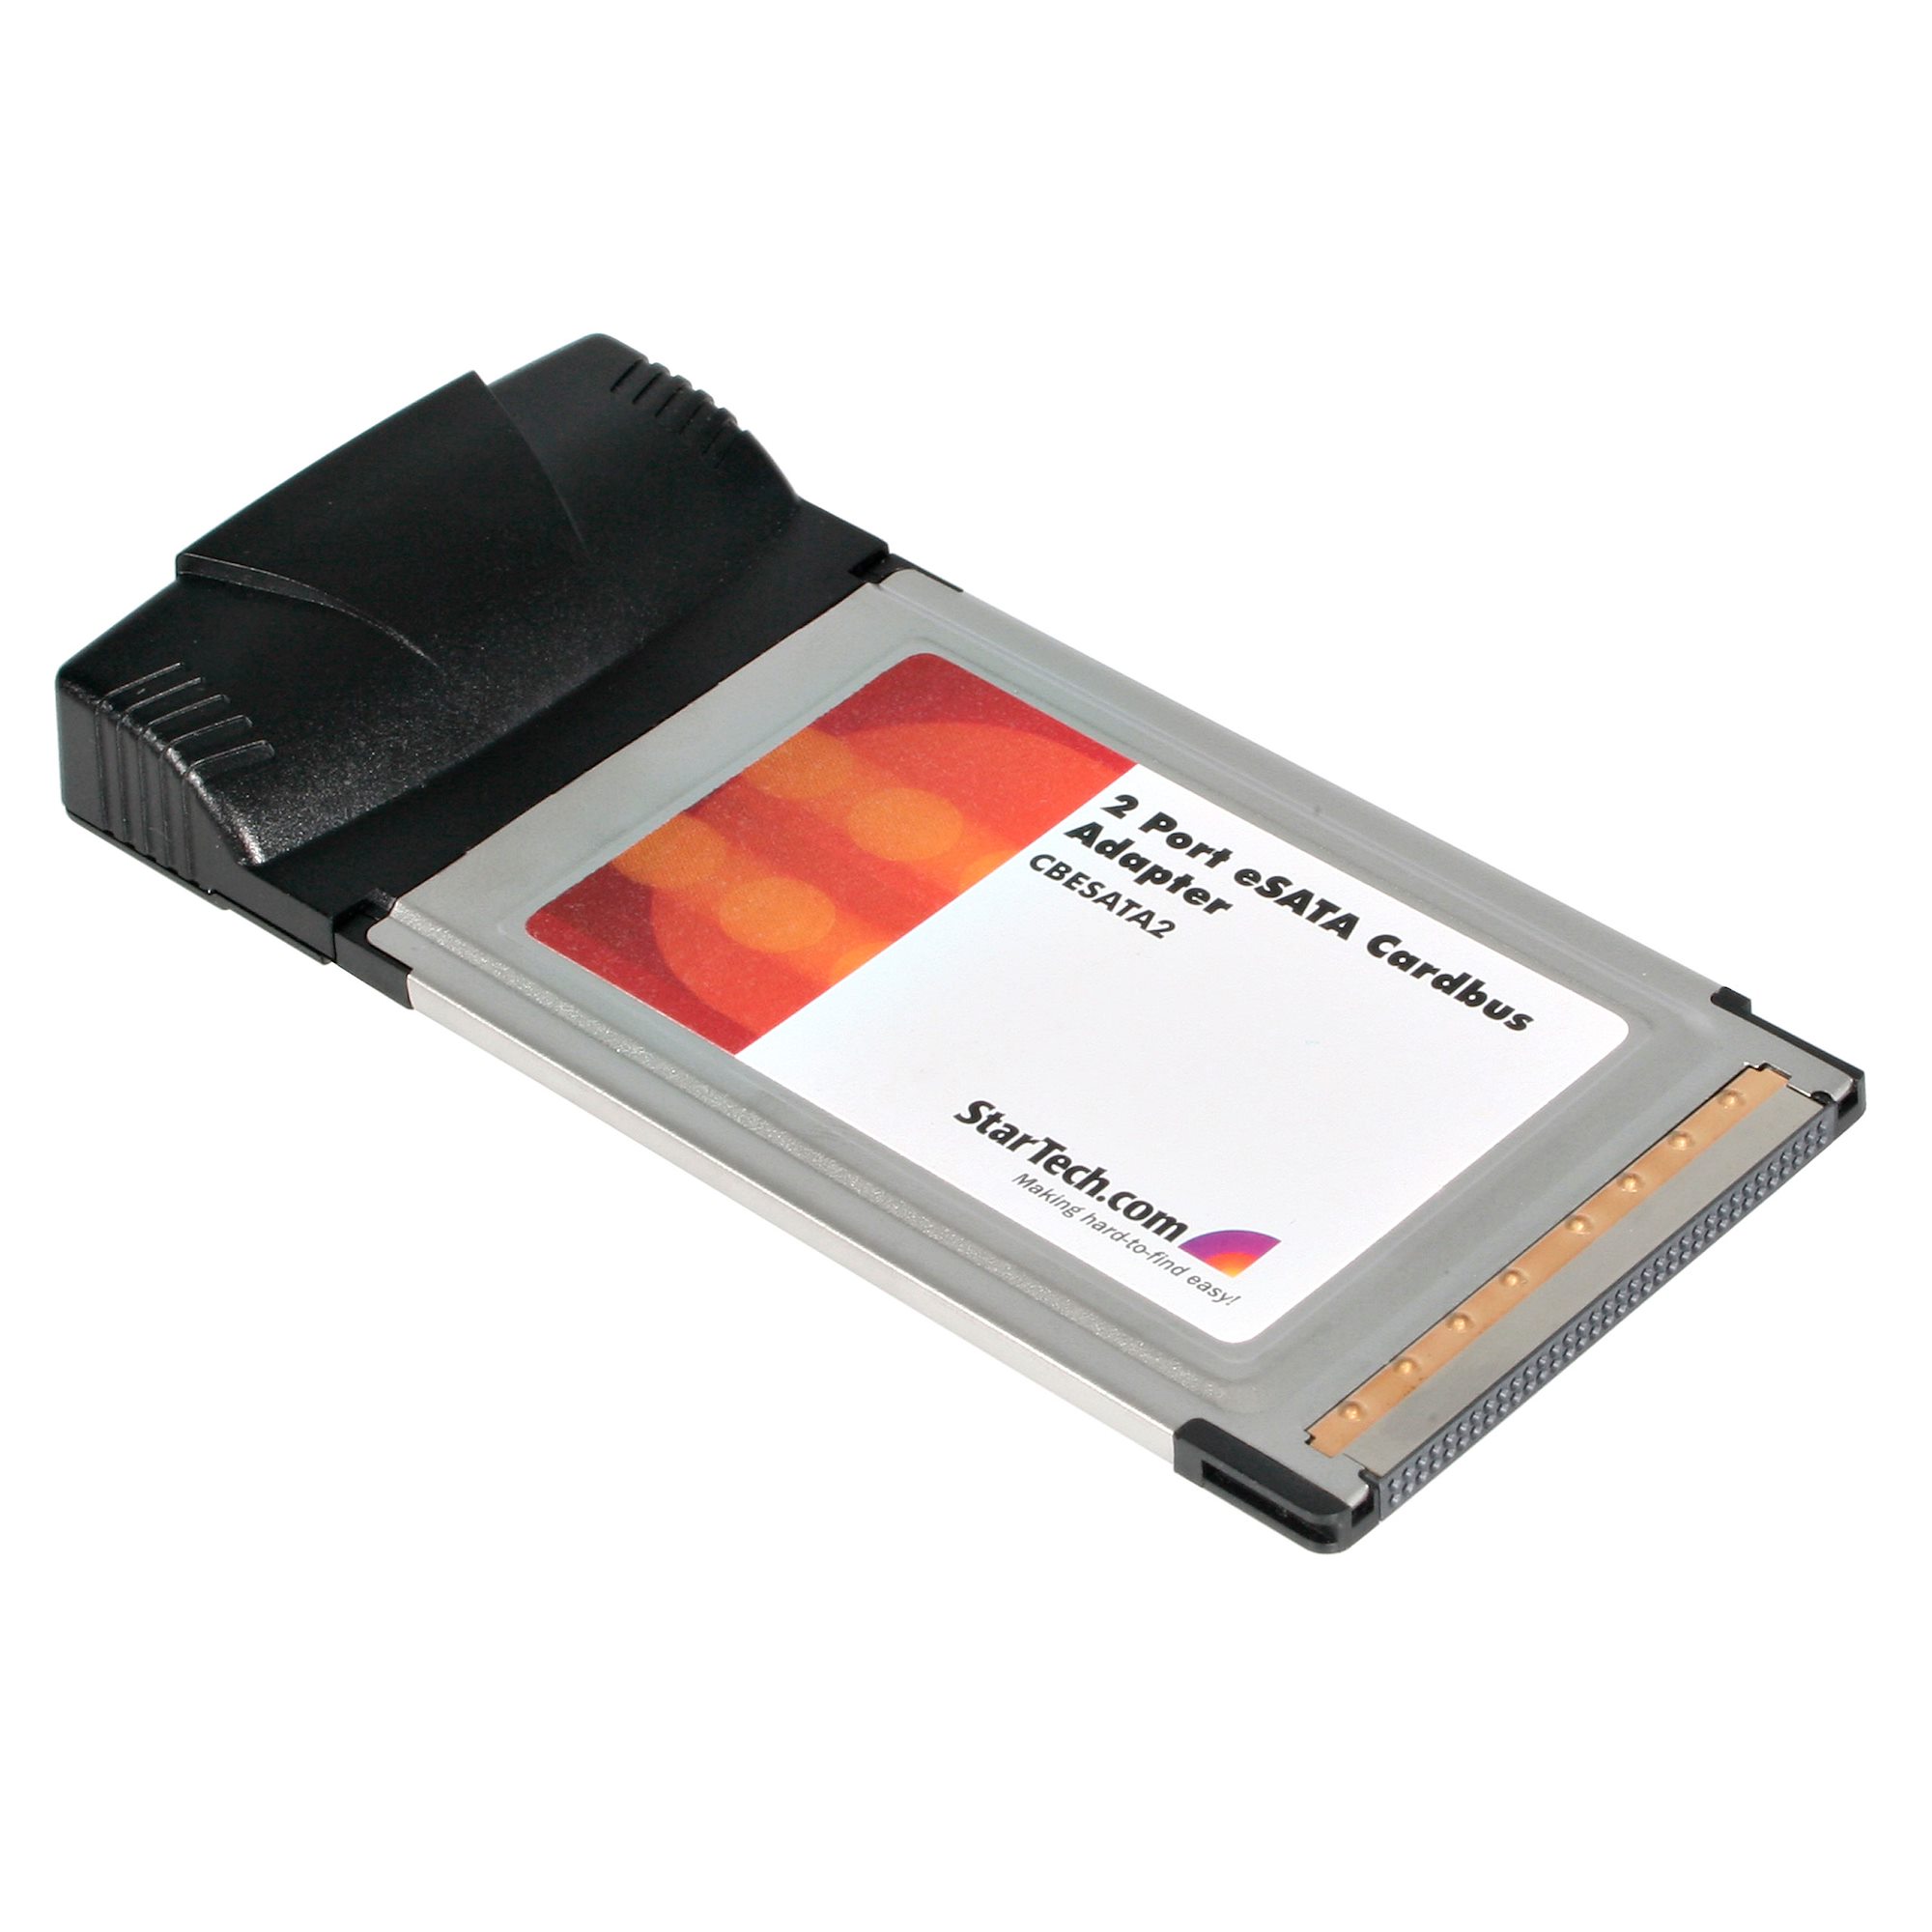 2 Port CardBus eSATA Laptop Adapter Card - SATA Controller Cards